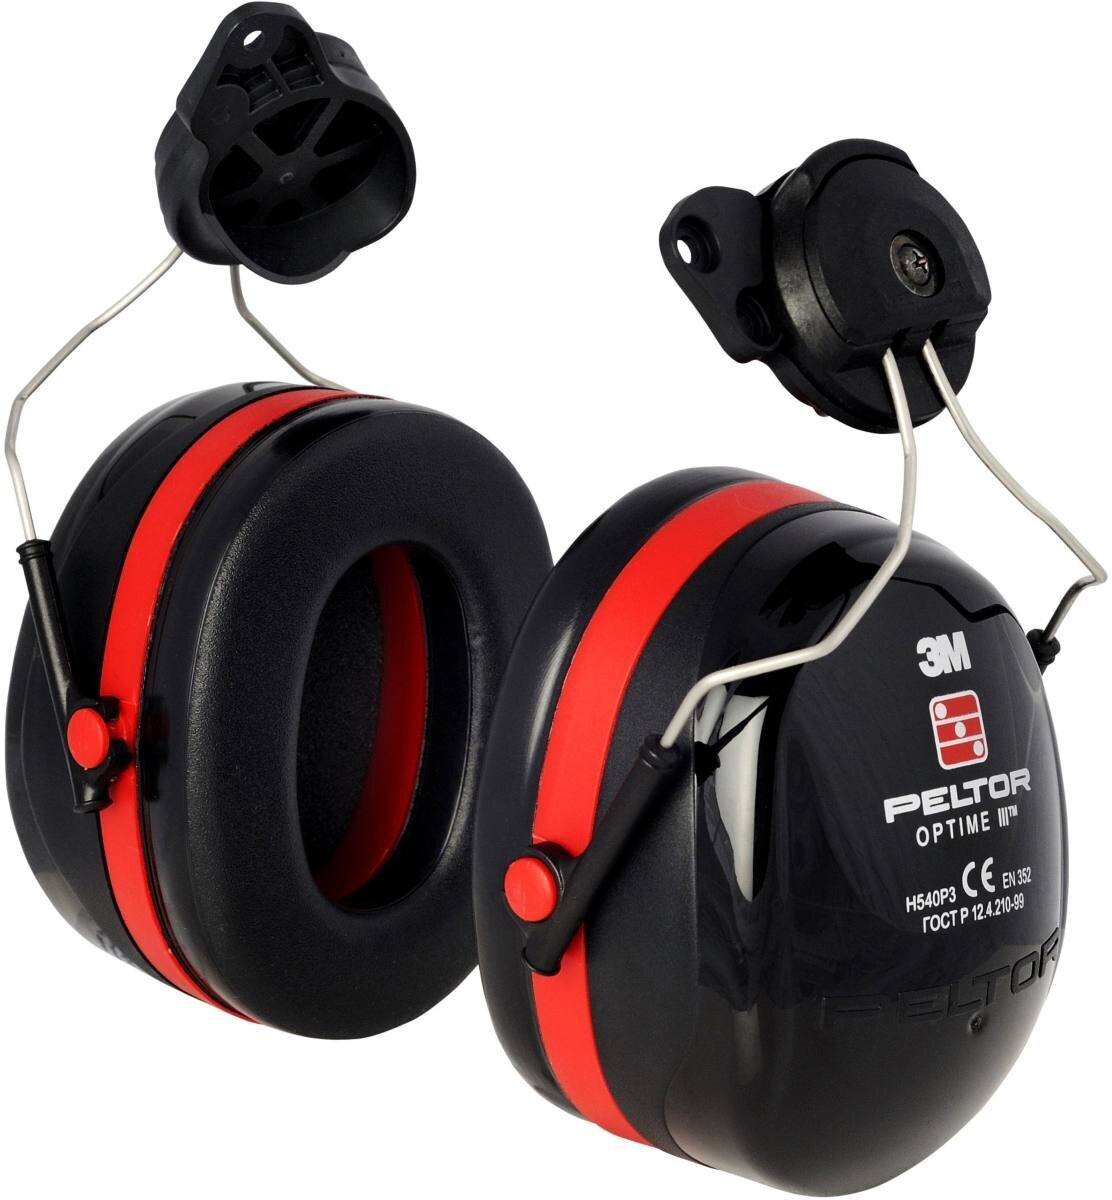 Orejeras 3M Peltor Optime III, fijación para casco, negras, con adaptador para casco, SNR = 34 dB, H540P3H-413-SV